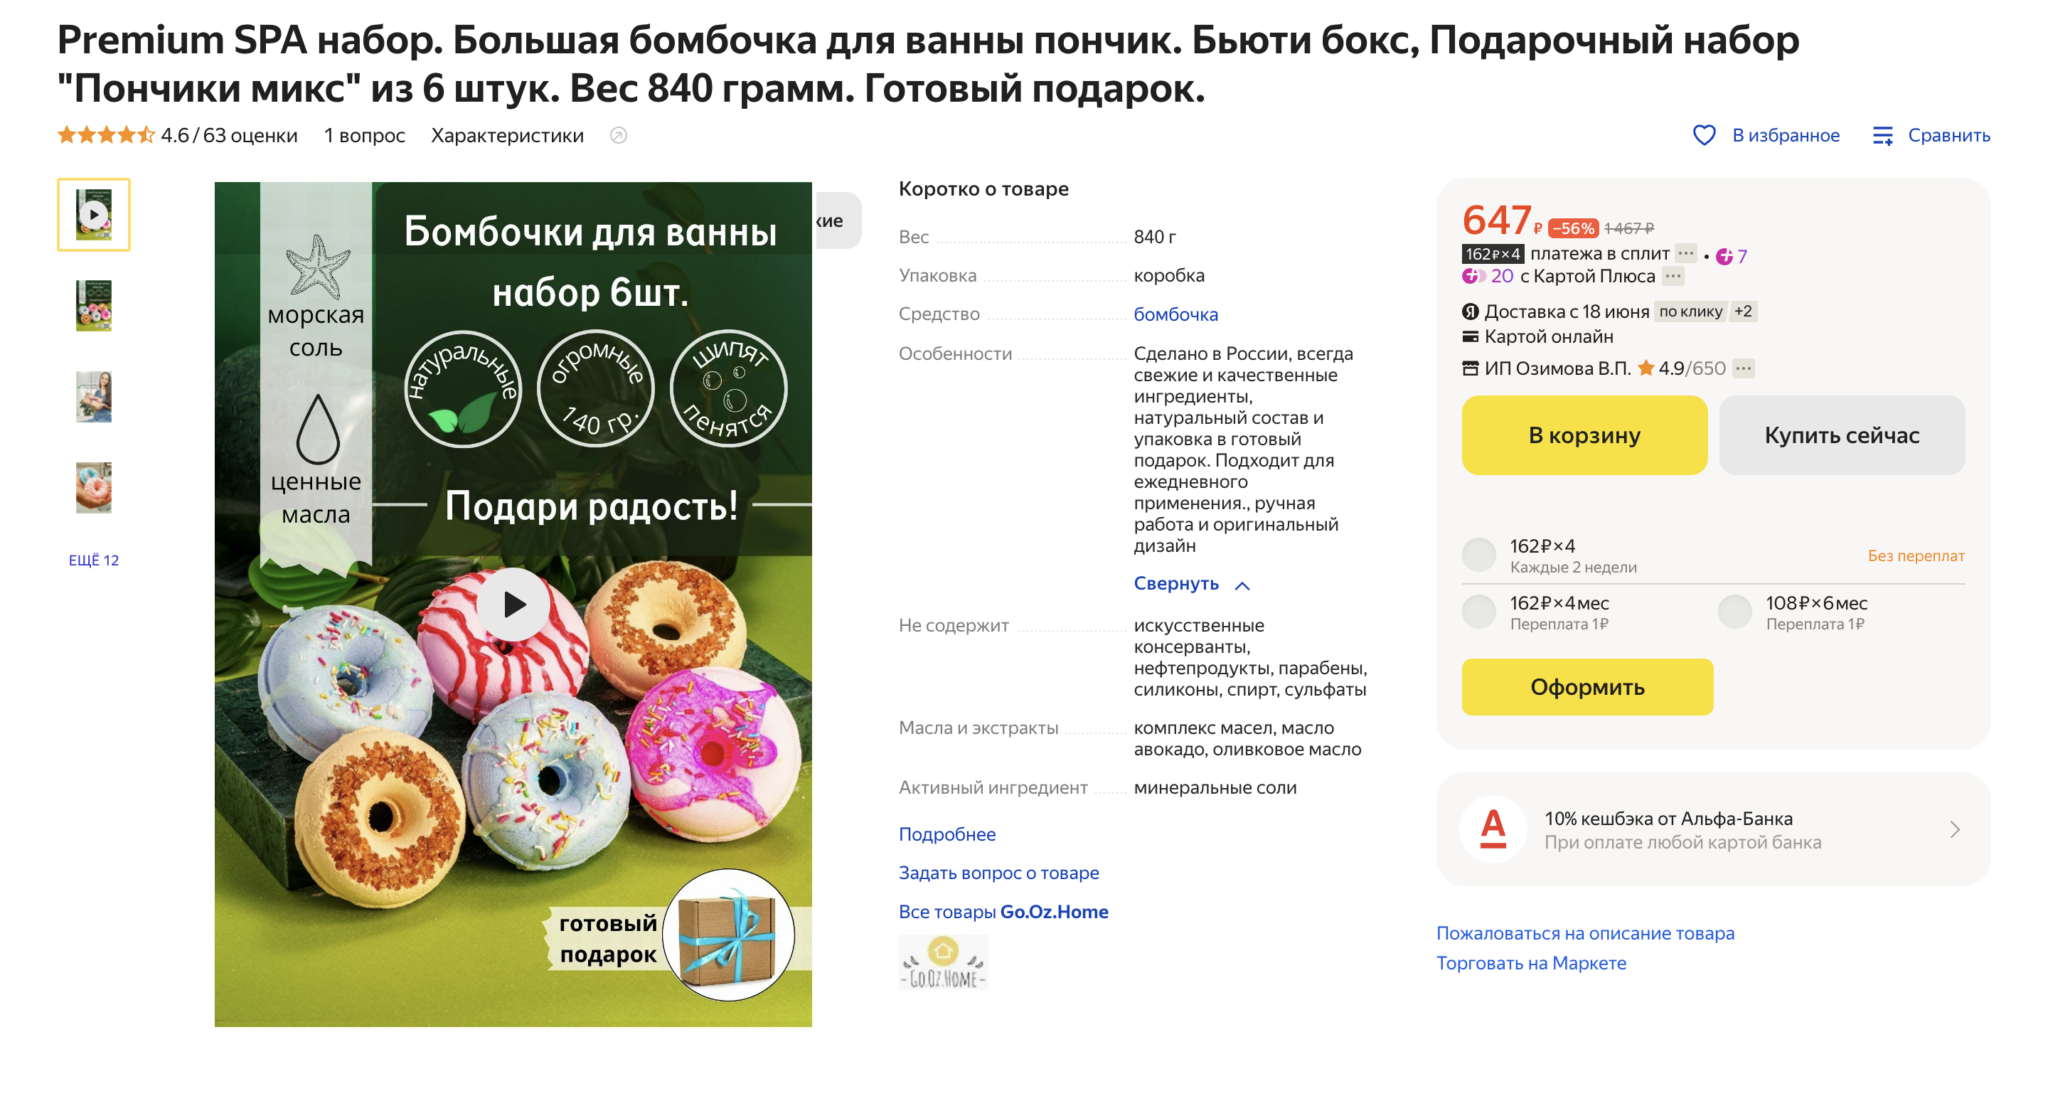 Что продают самозанятые на маркетплейсах. More tovarov ru ваш надежный маркетплейс для товаров и услуг по всей России.